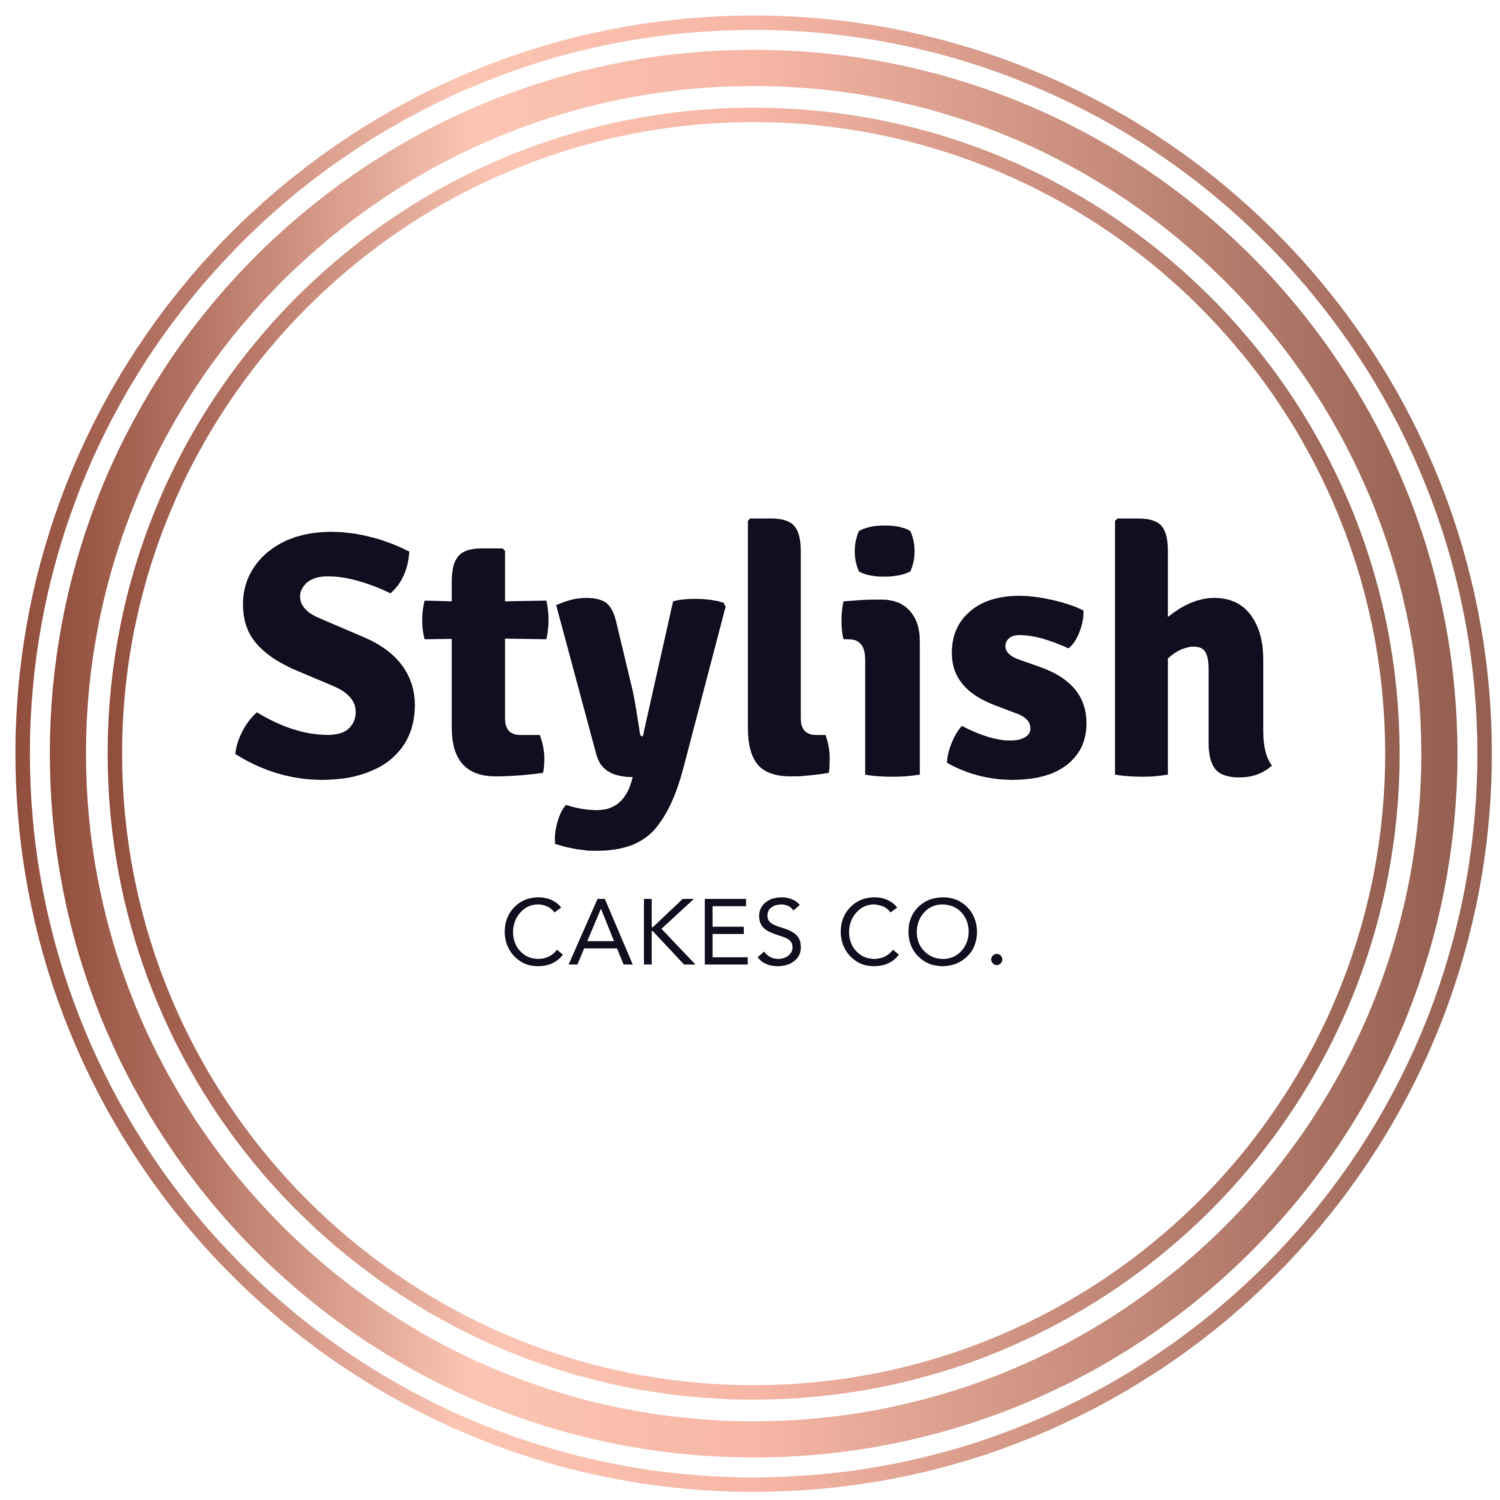 Stylish Cakes